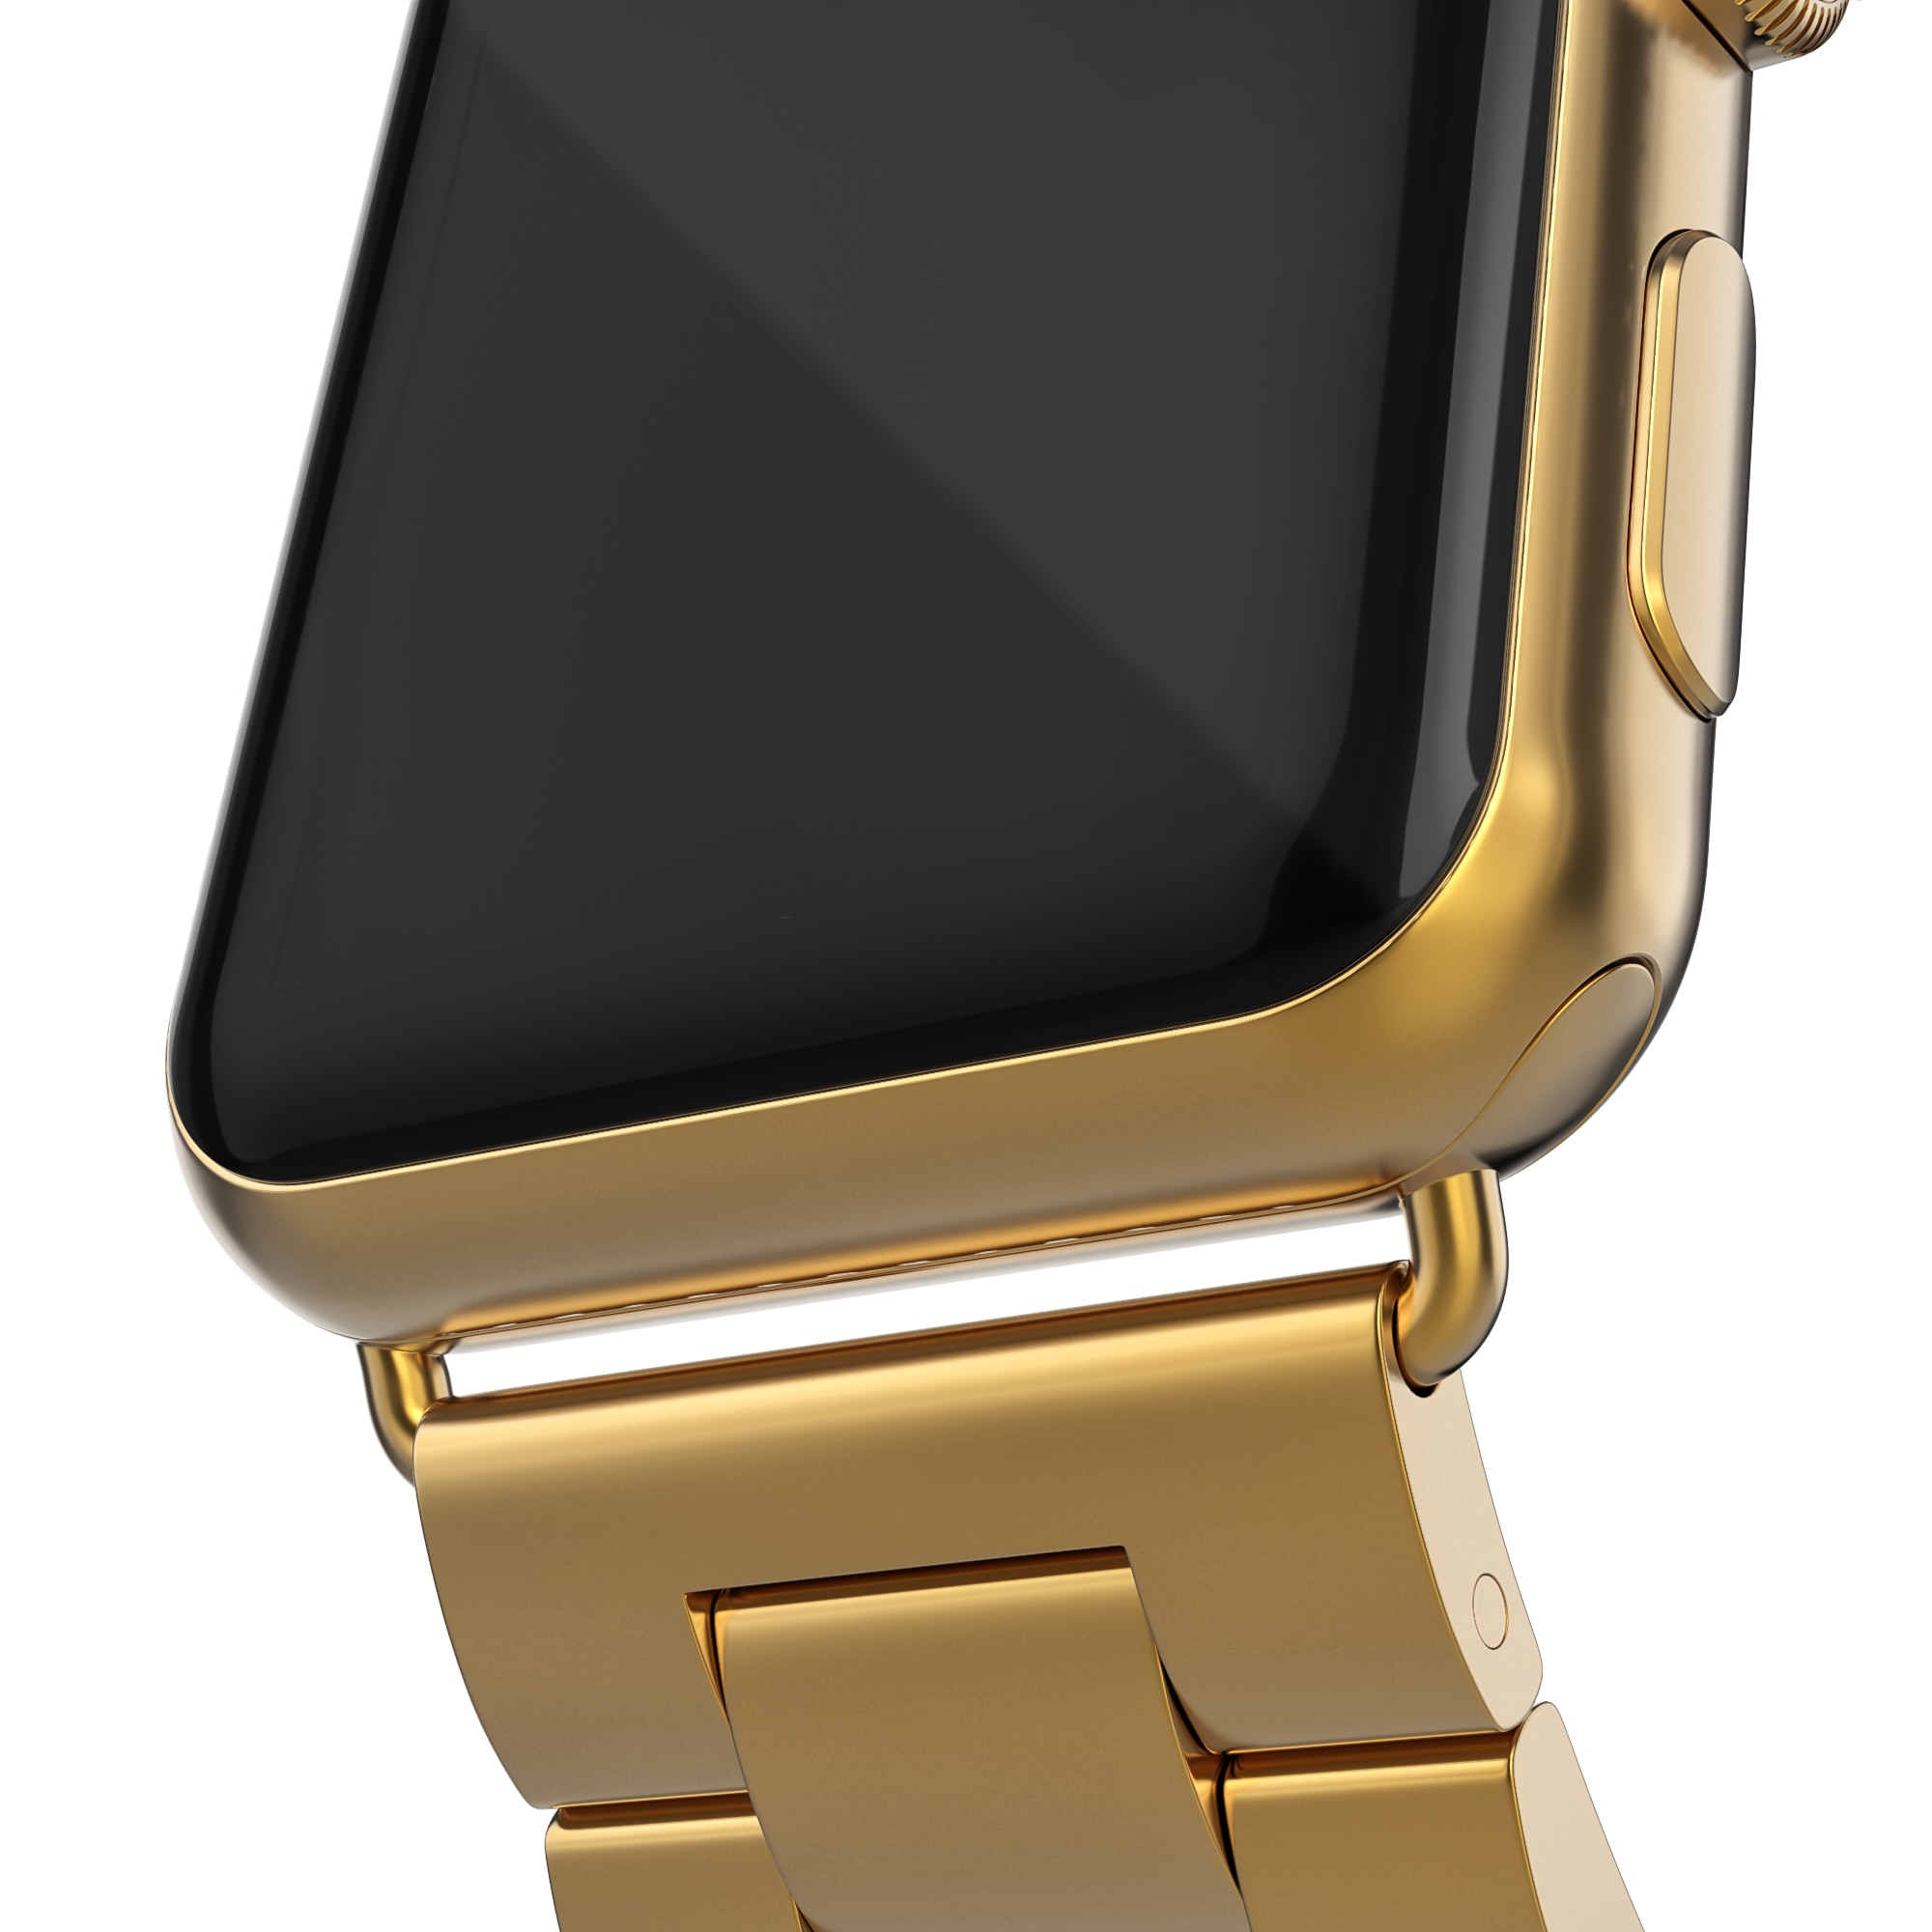 Bracelet en métal Apple Watch SE 40mm or